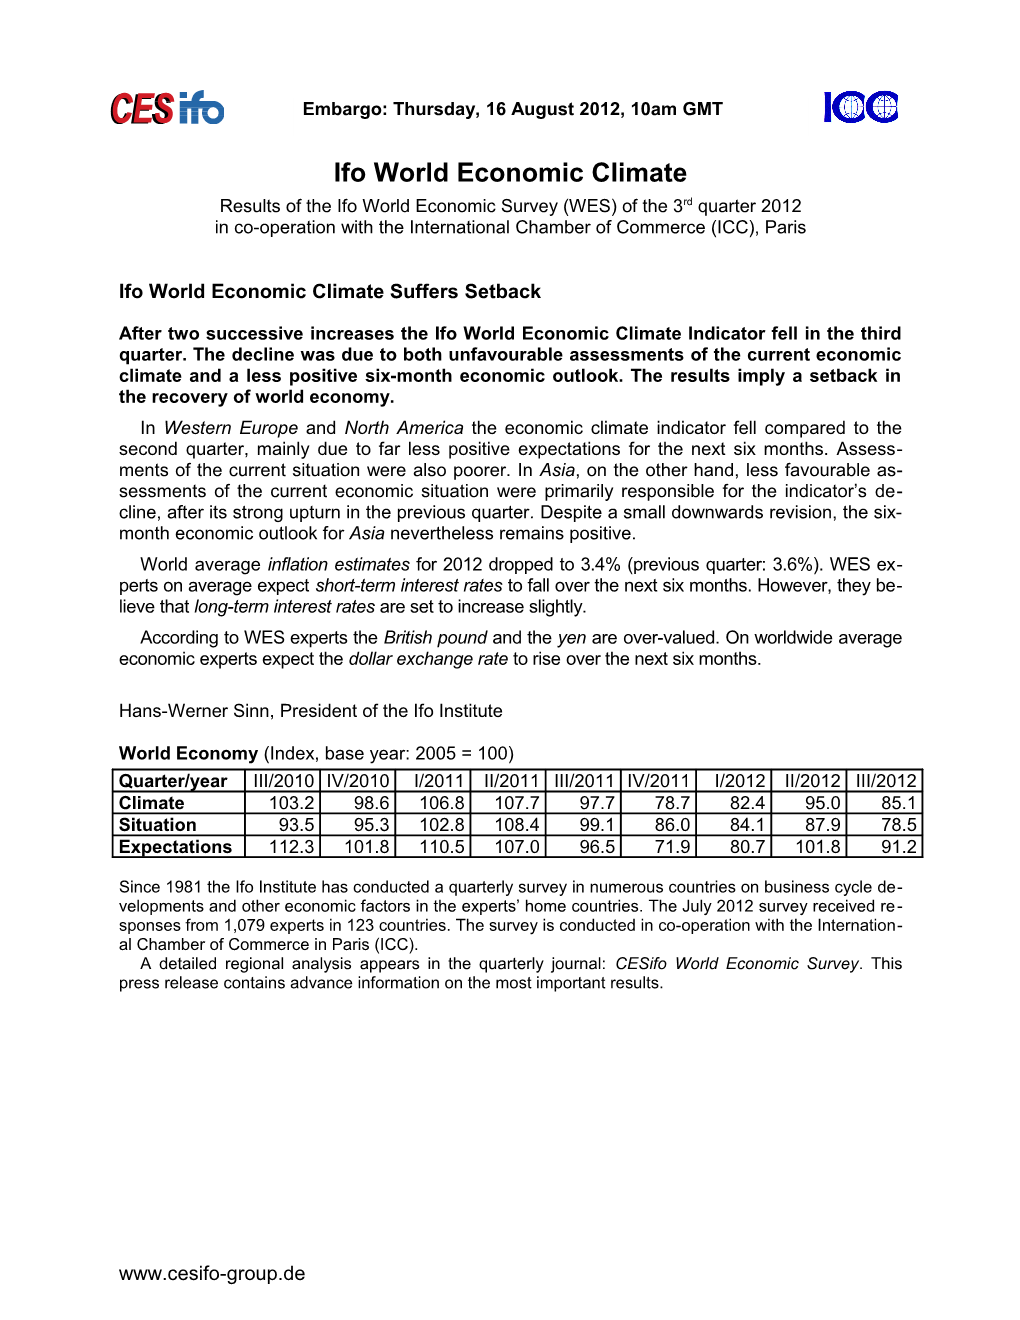 World Economy: Rebound of Climate Indicator